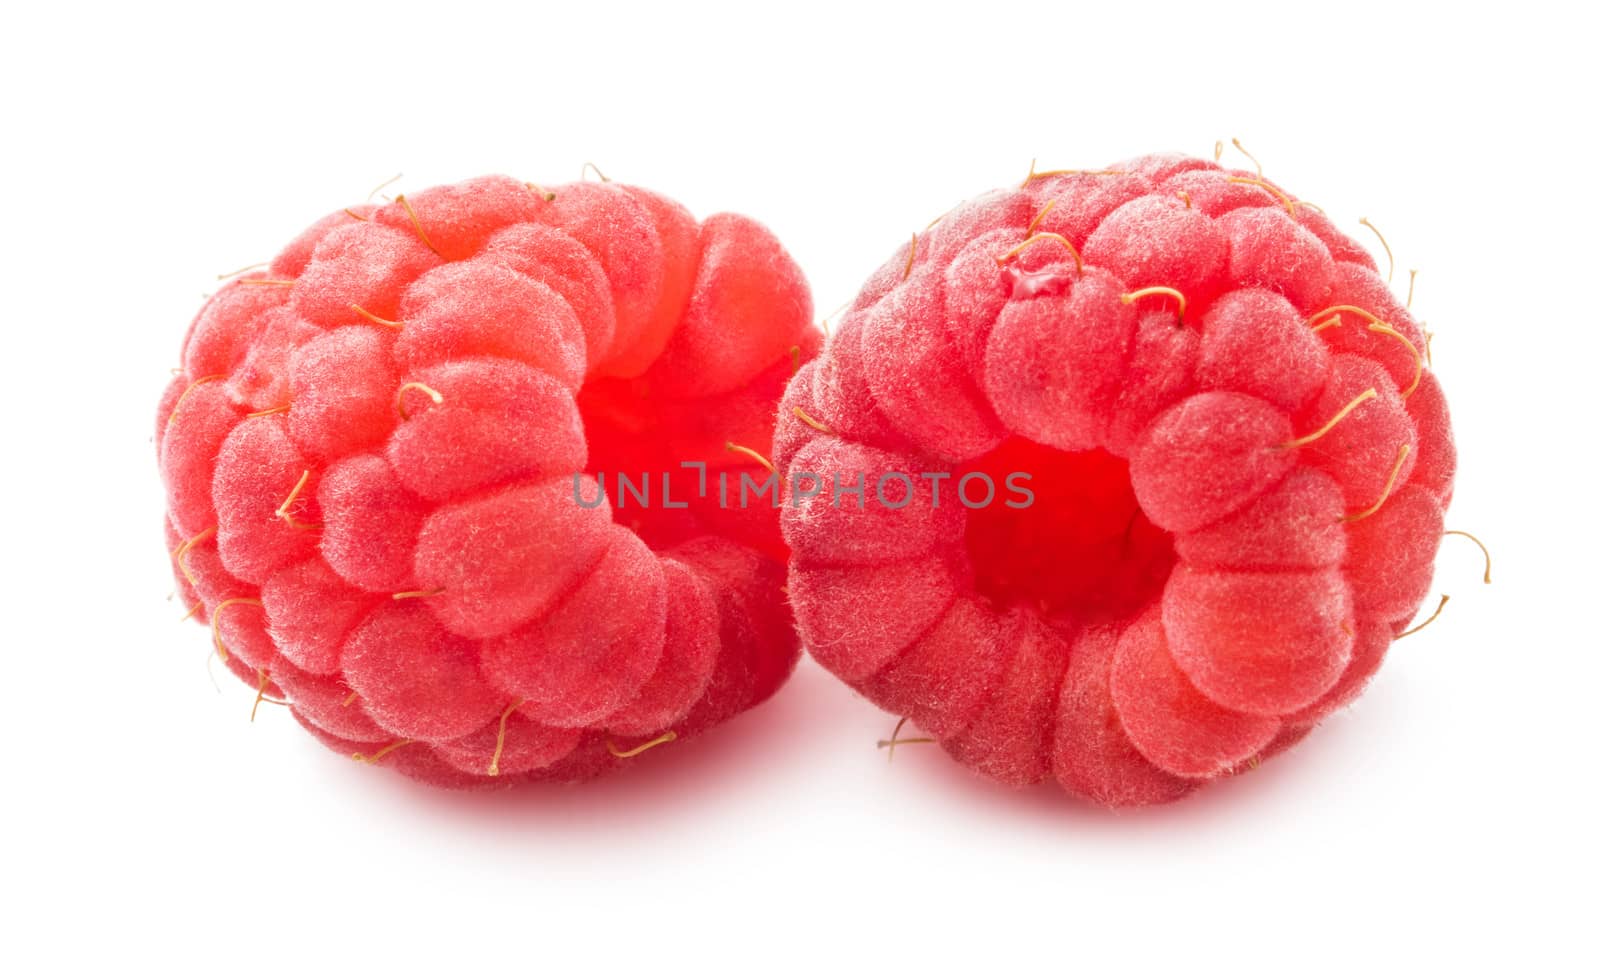 Fresh raspberries by sailorr